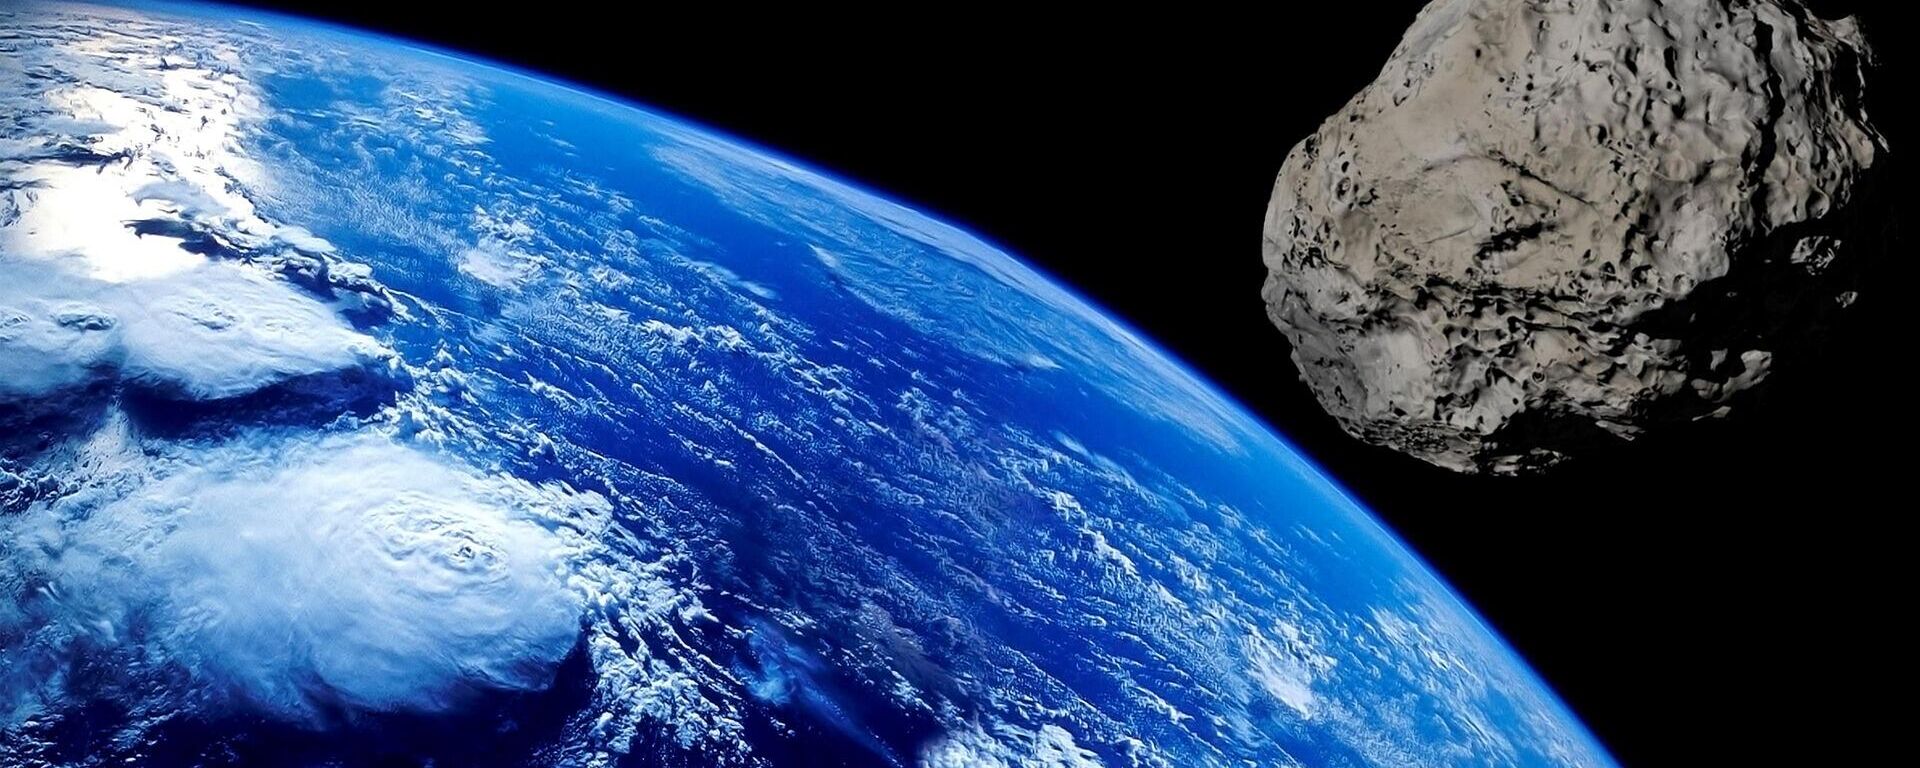 Un asteroide cerca de la Tierra - Sputnik Mundo, 1920, 29.06.2021